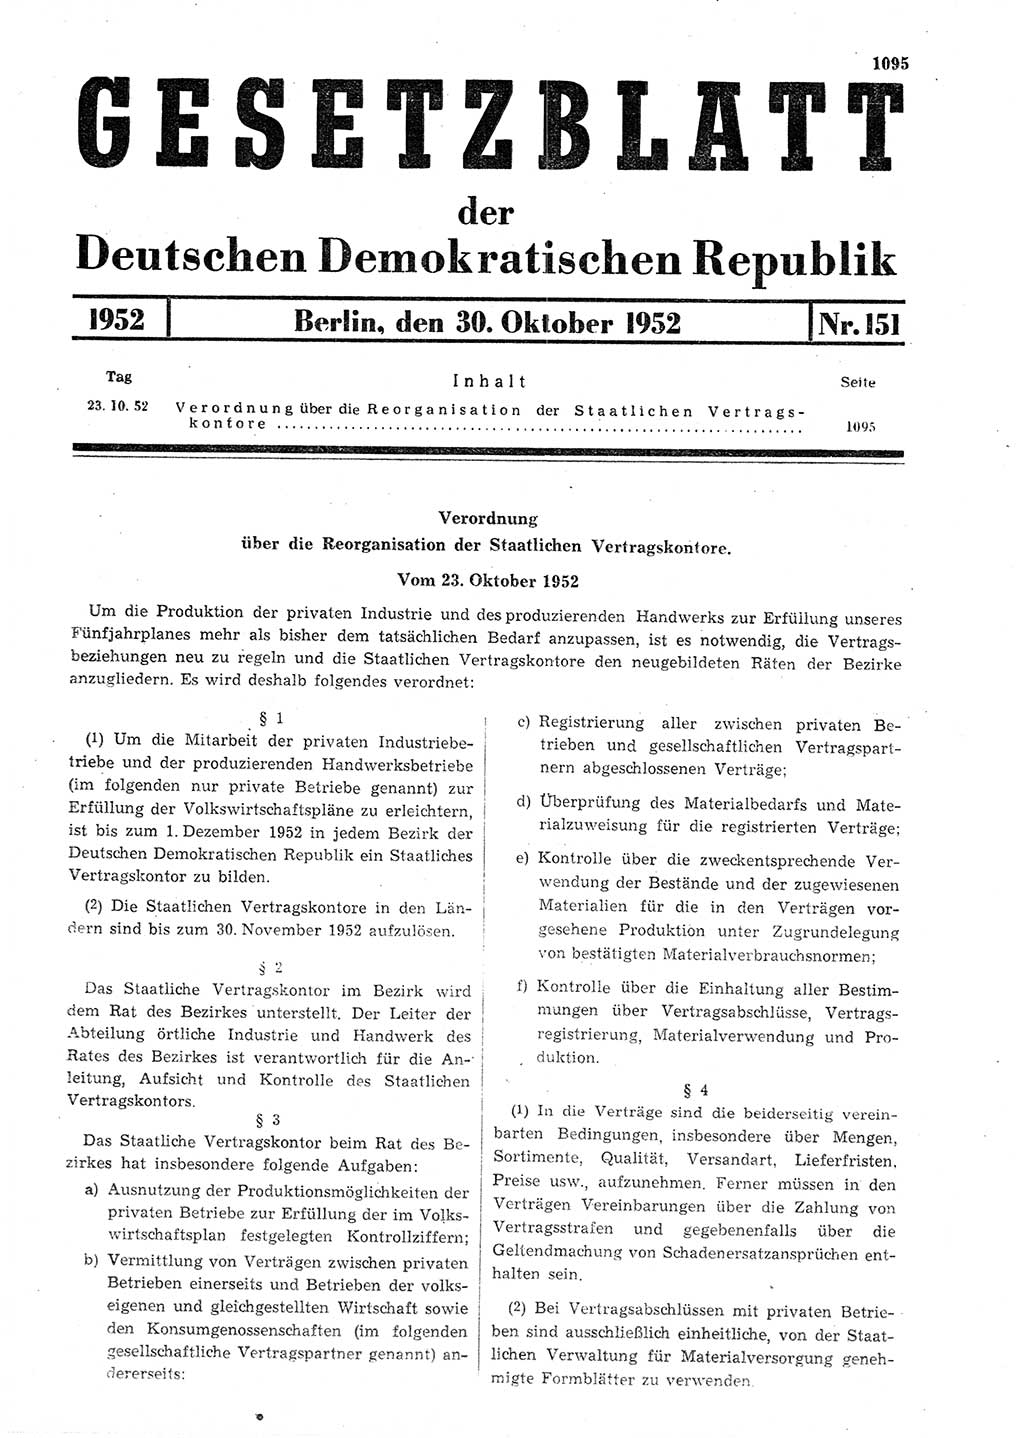 Gesetzblatt (GBl.) der Deutschen Demokratischen Republik (DDR) 1952, Seite 1095 (GBl. DDR 1952, S. 1095)